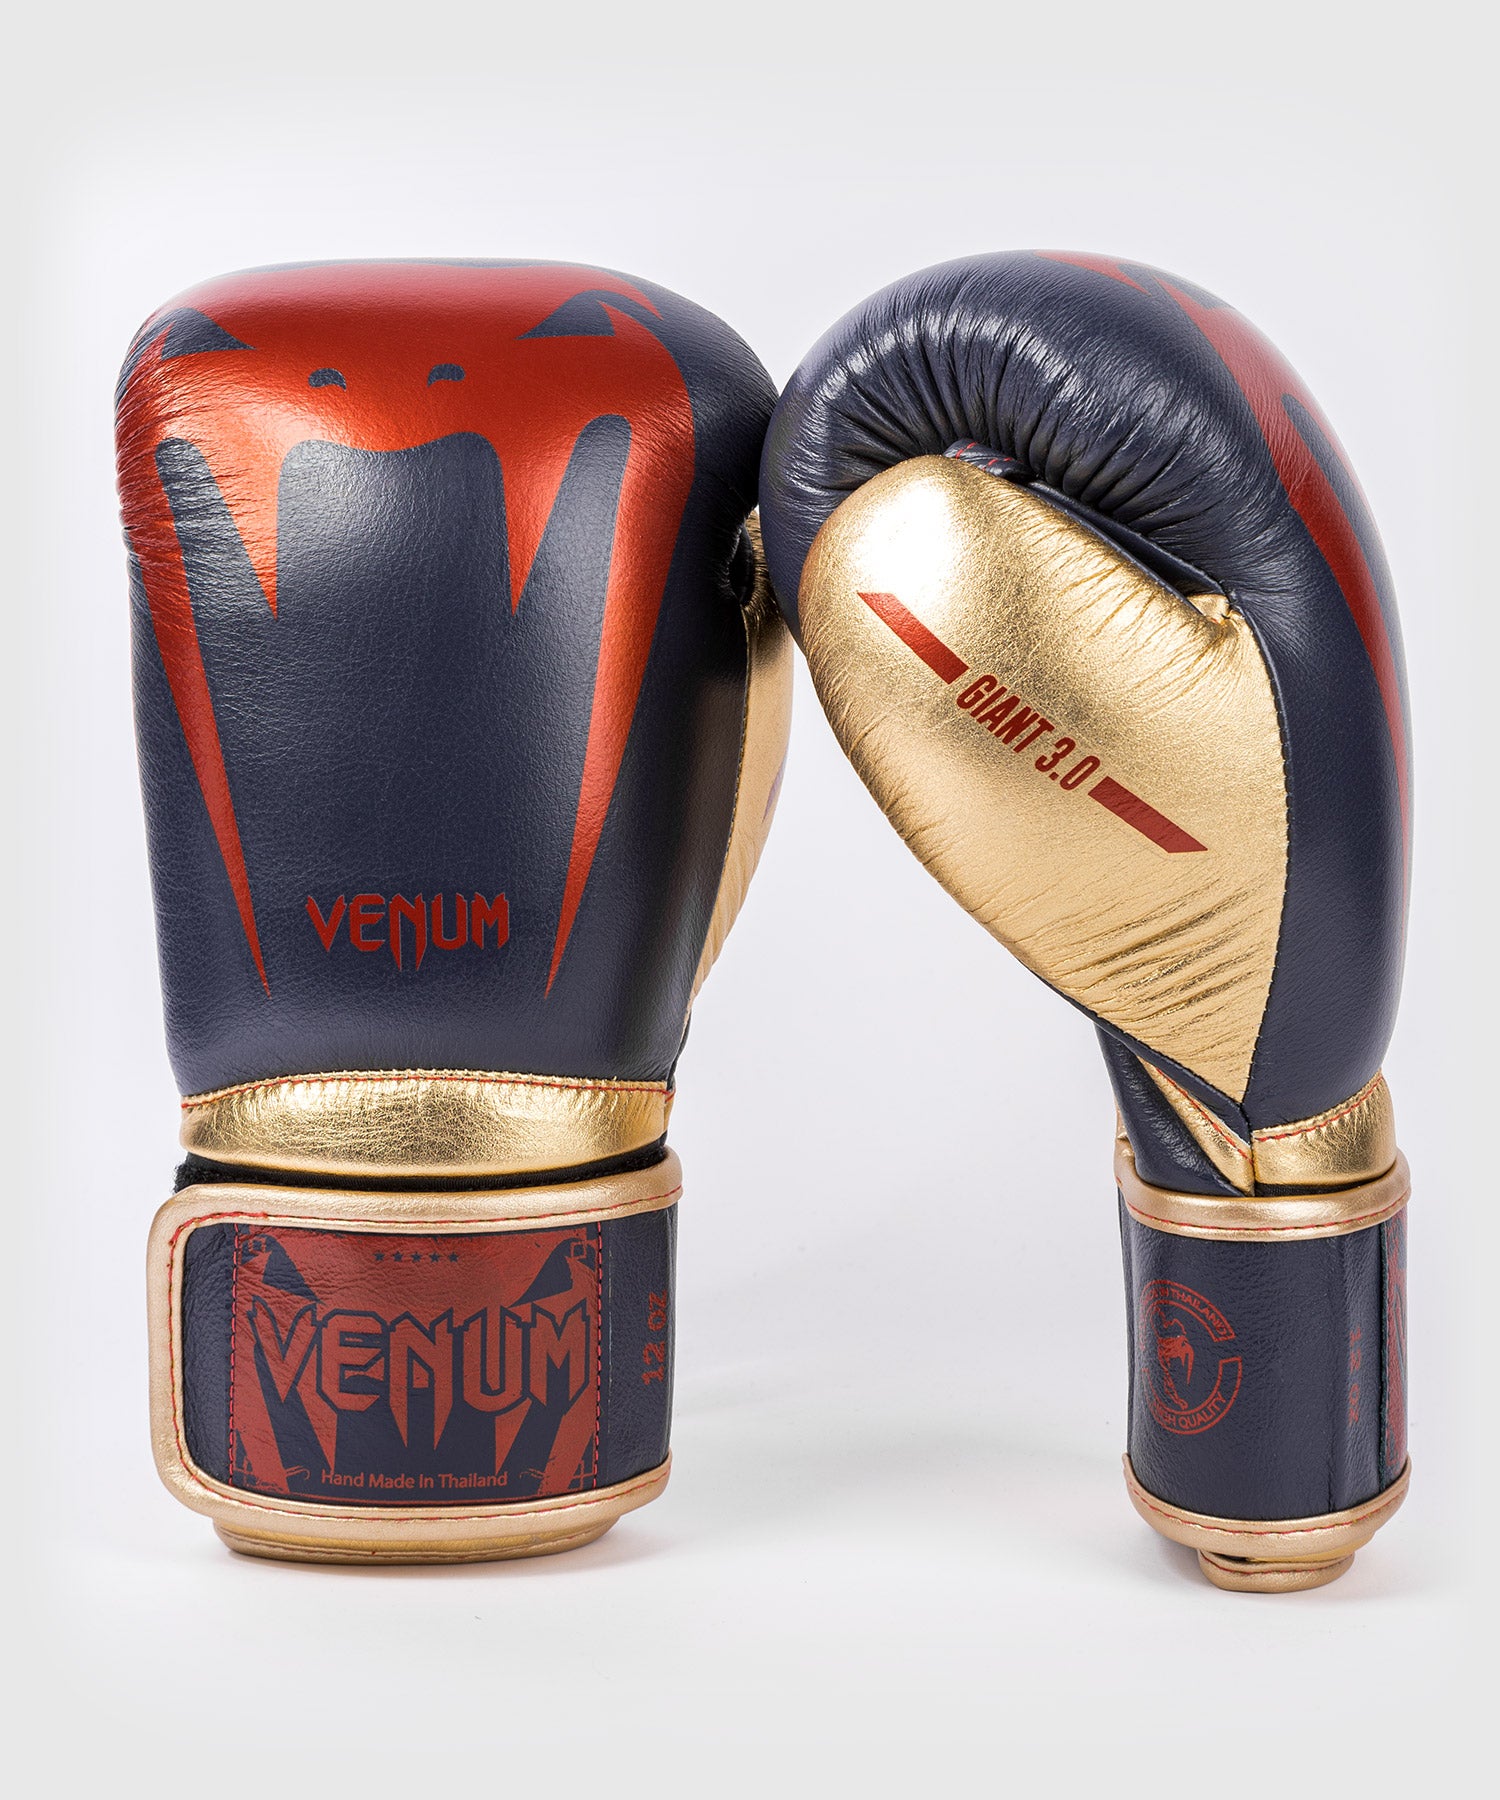 Gants de boxe Venum Giant 3.0